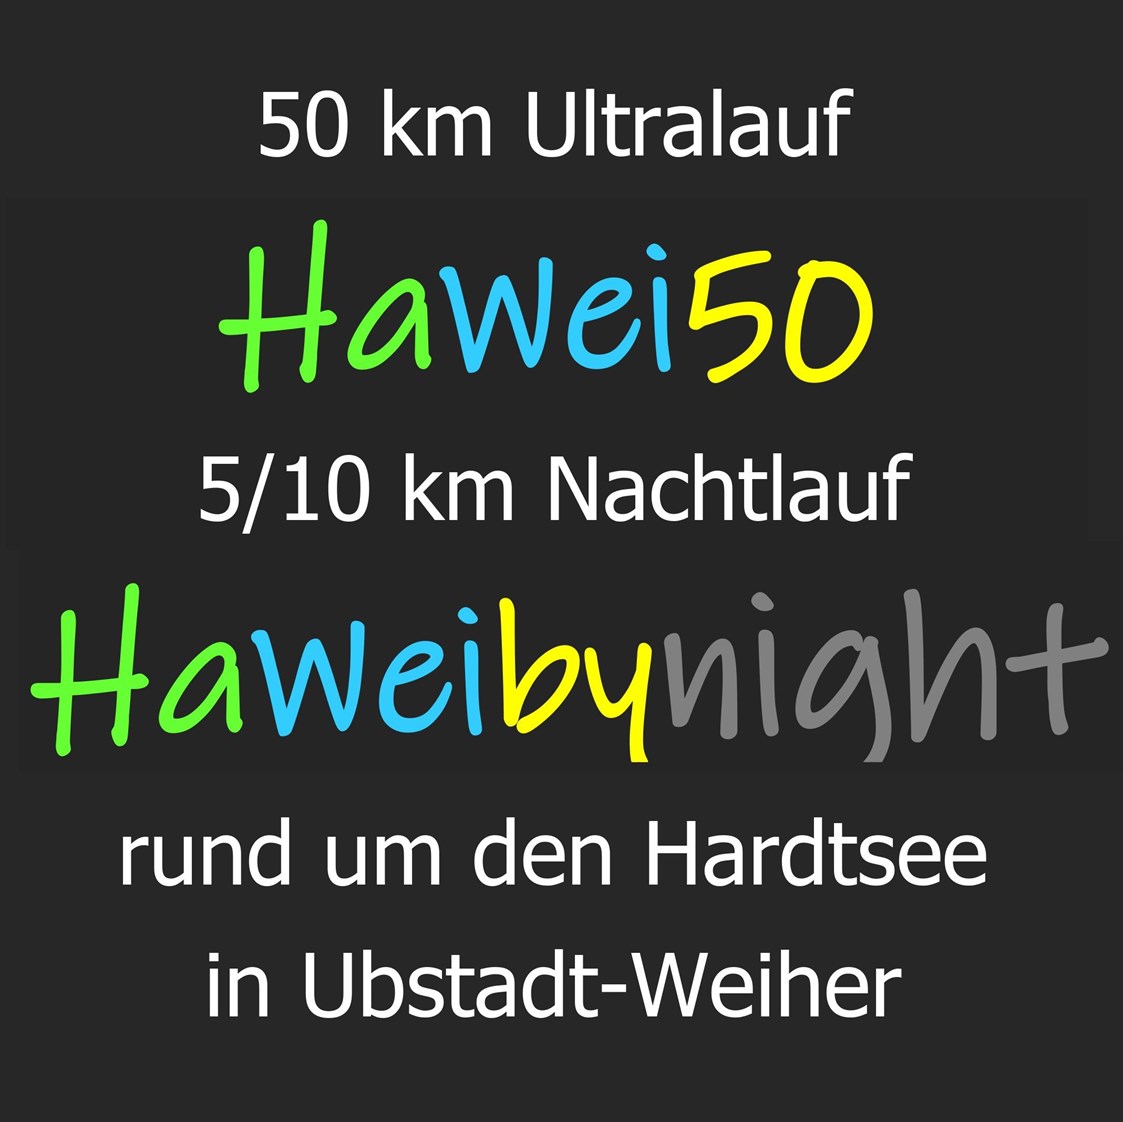 Lauf: HaWei50 - 50 km Ultralauf rund um den Hardtsee in Ubstadt-Weiher